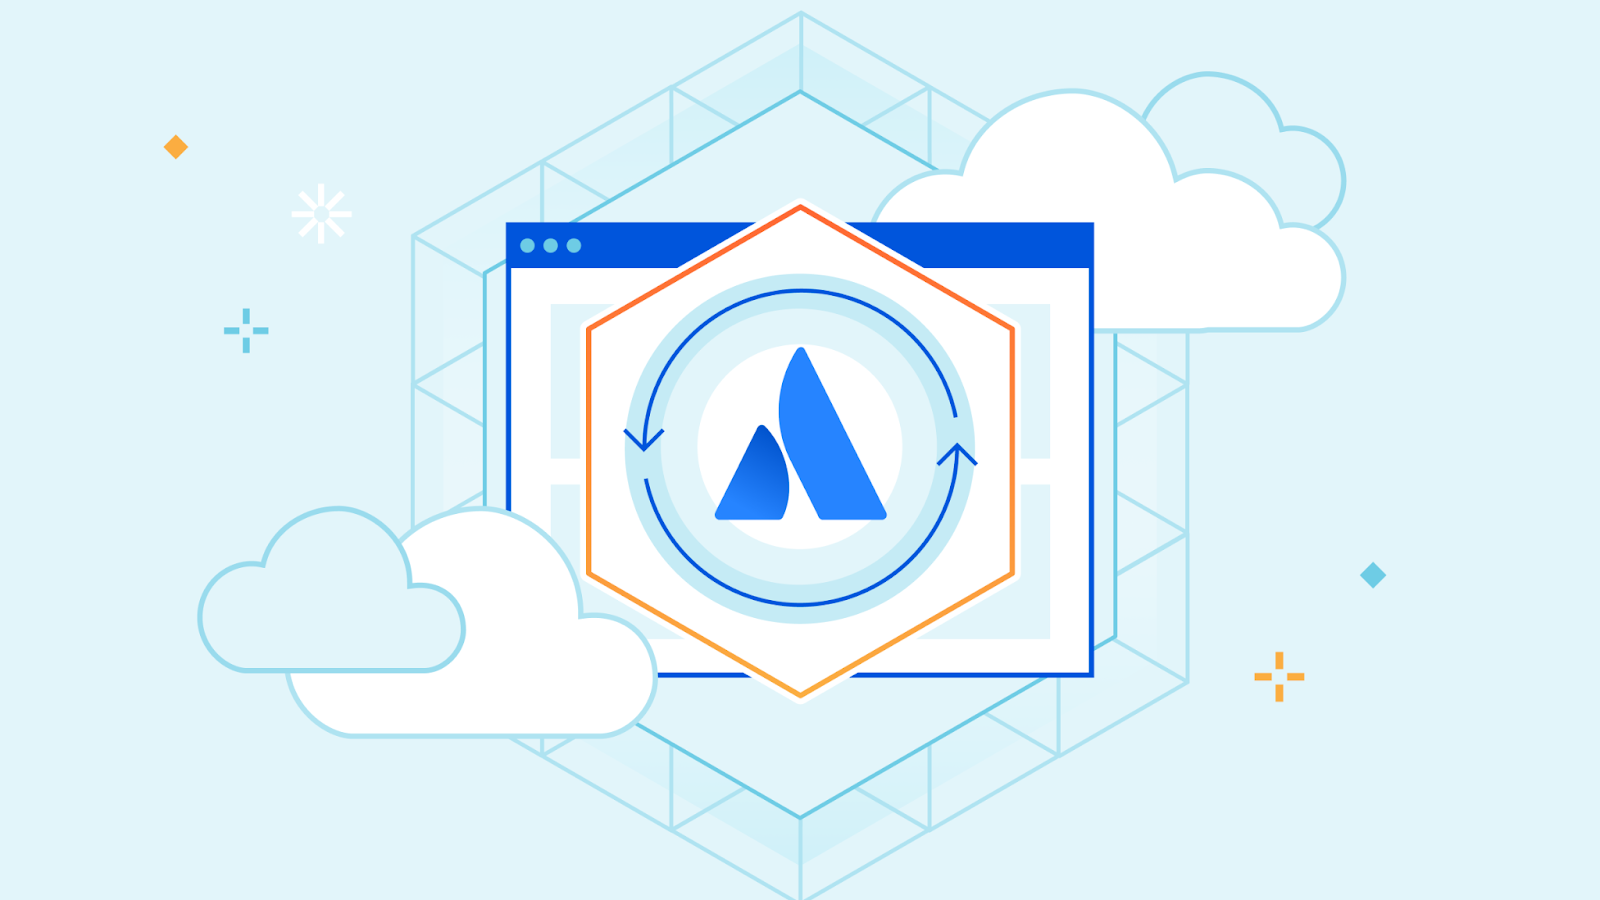 Analiza y protege Atlassian con Cloudflare CASB